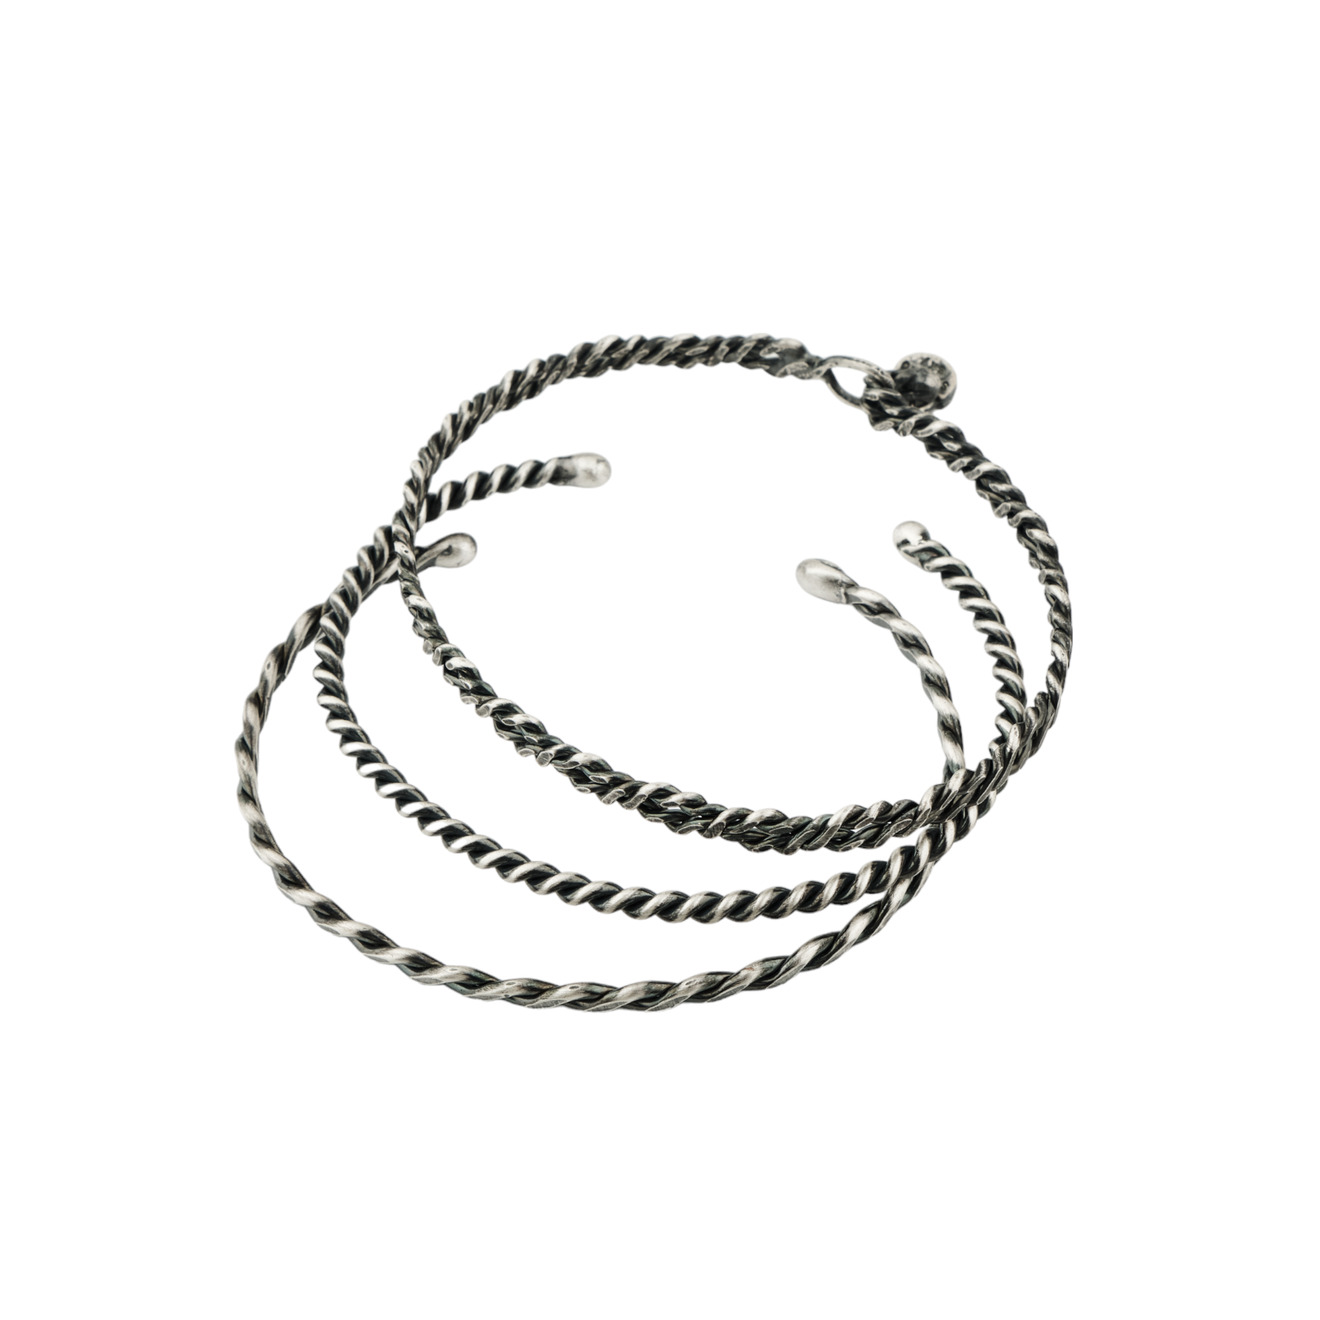 Svarog Sky Сет из трех браслетов с серебряным покрытием svarog sky открытое кольцо с серебряным покрытием